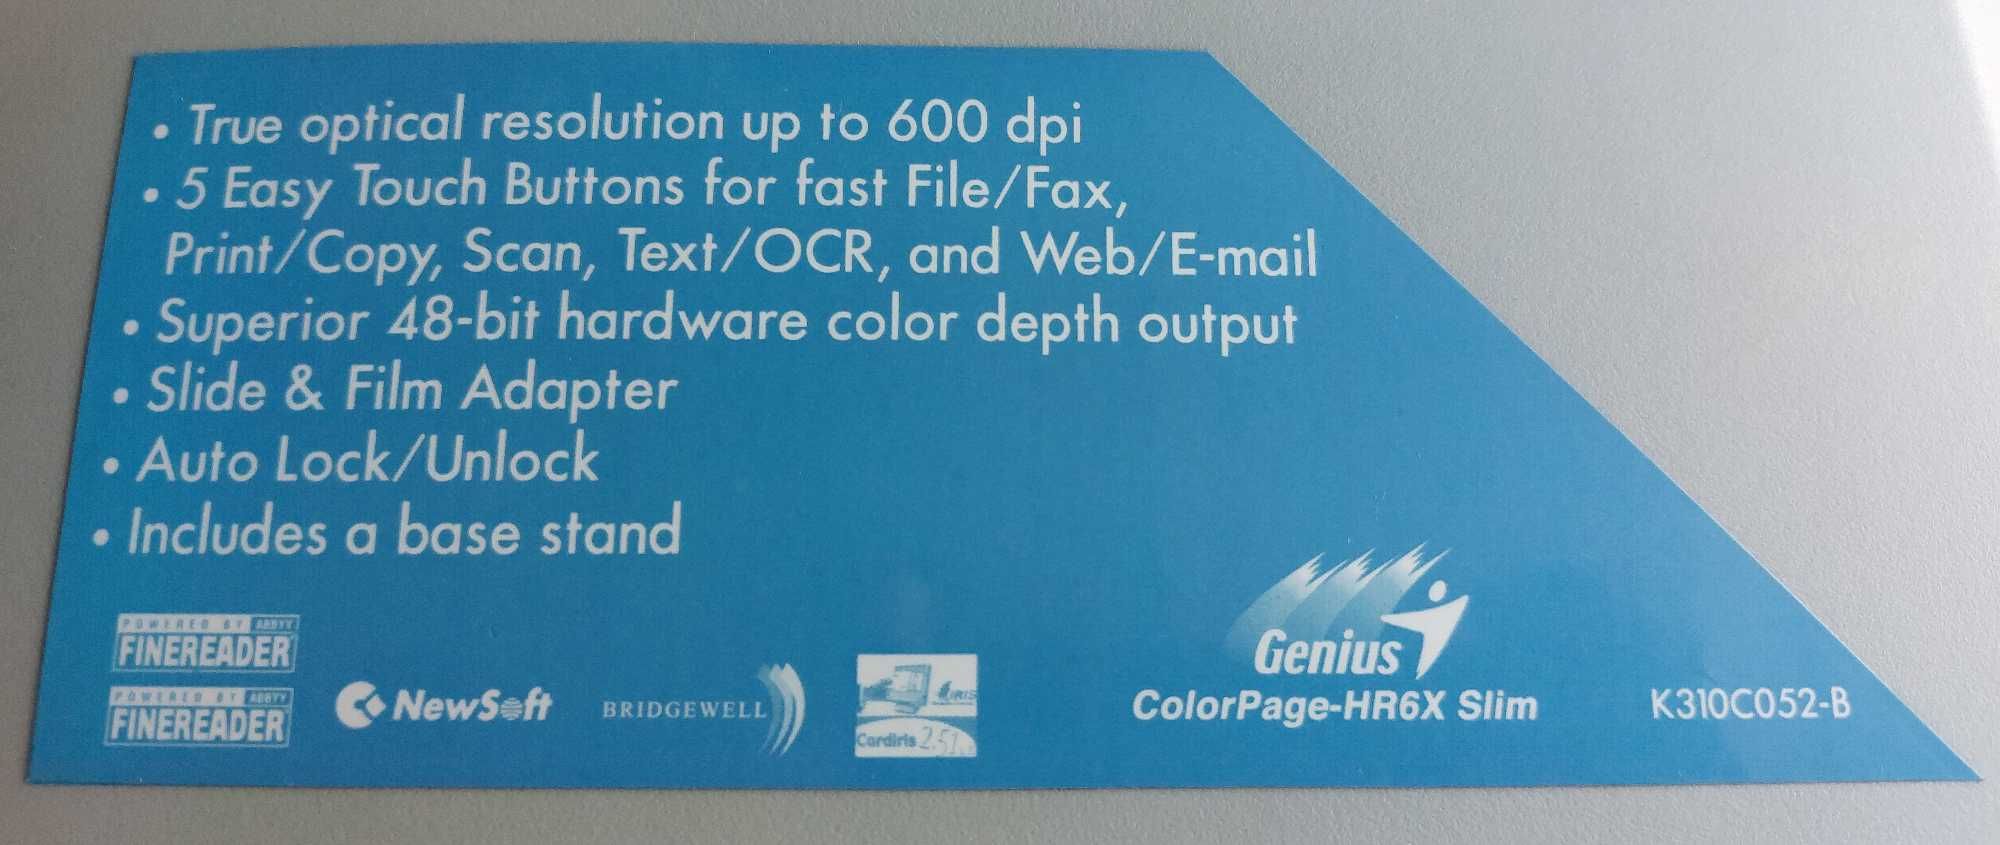 Scanner Genius ColorPage HR6x Slim